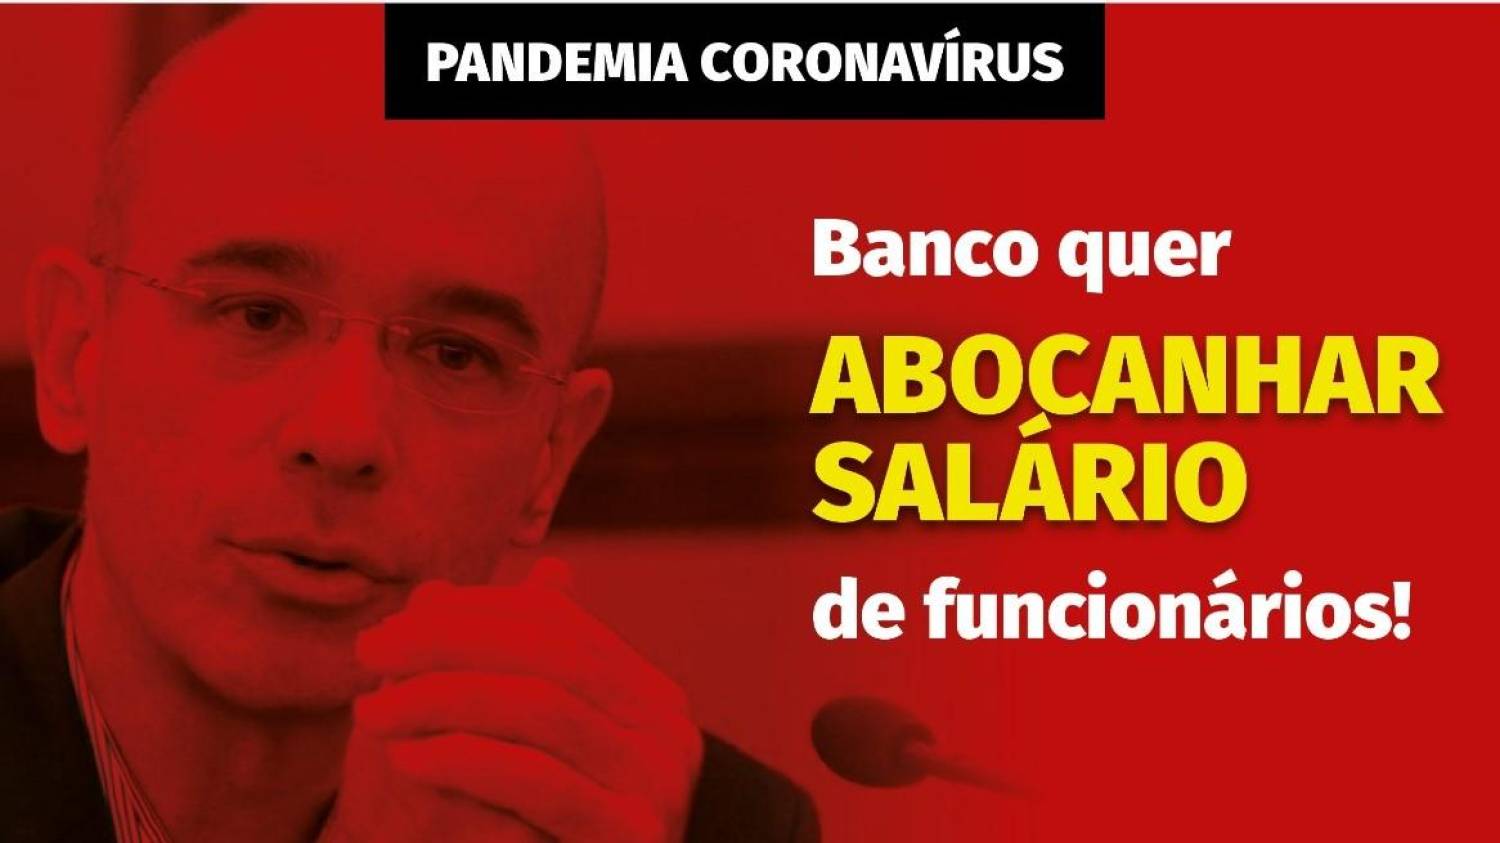 Bancário em home office pode abdicar voluntariamente de benefícios ou parte do salário, diz presidente do Santander